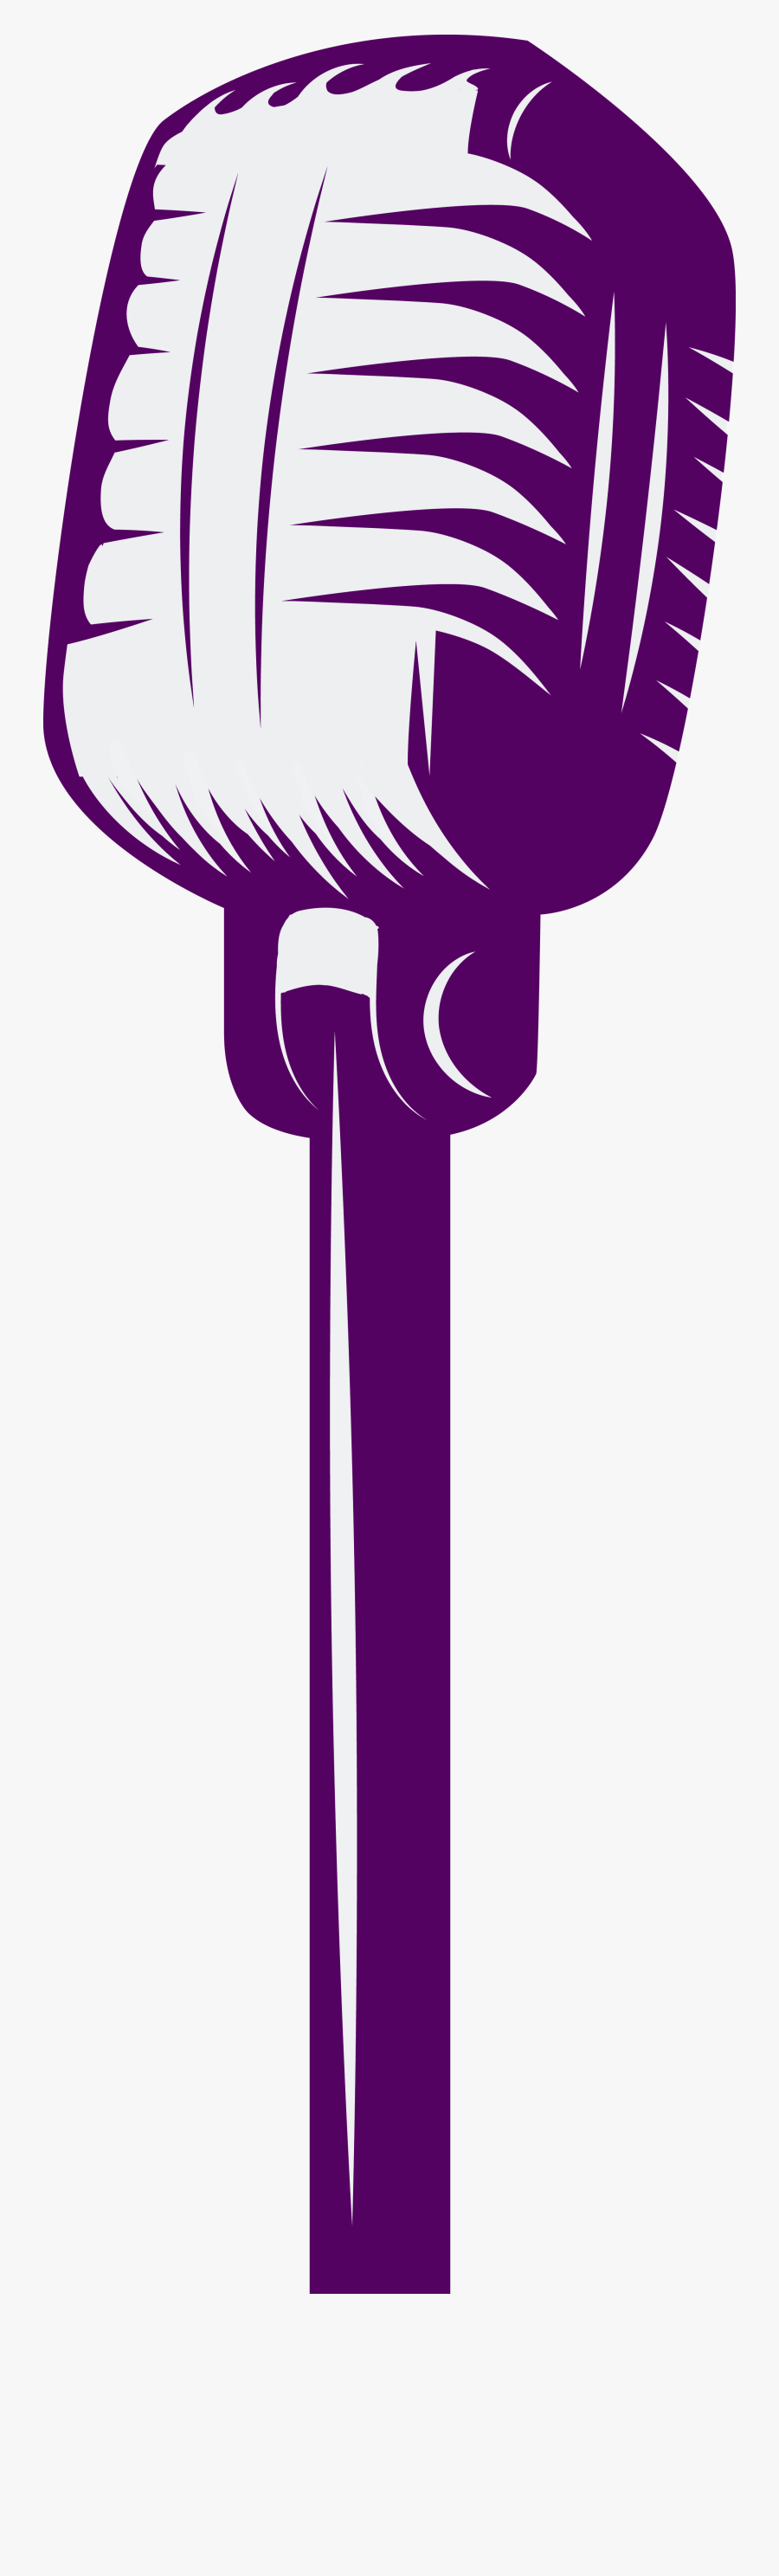 Microphone Clipart Purple - Voice Teacher Clip Art, Transparent Clipart